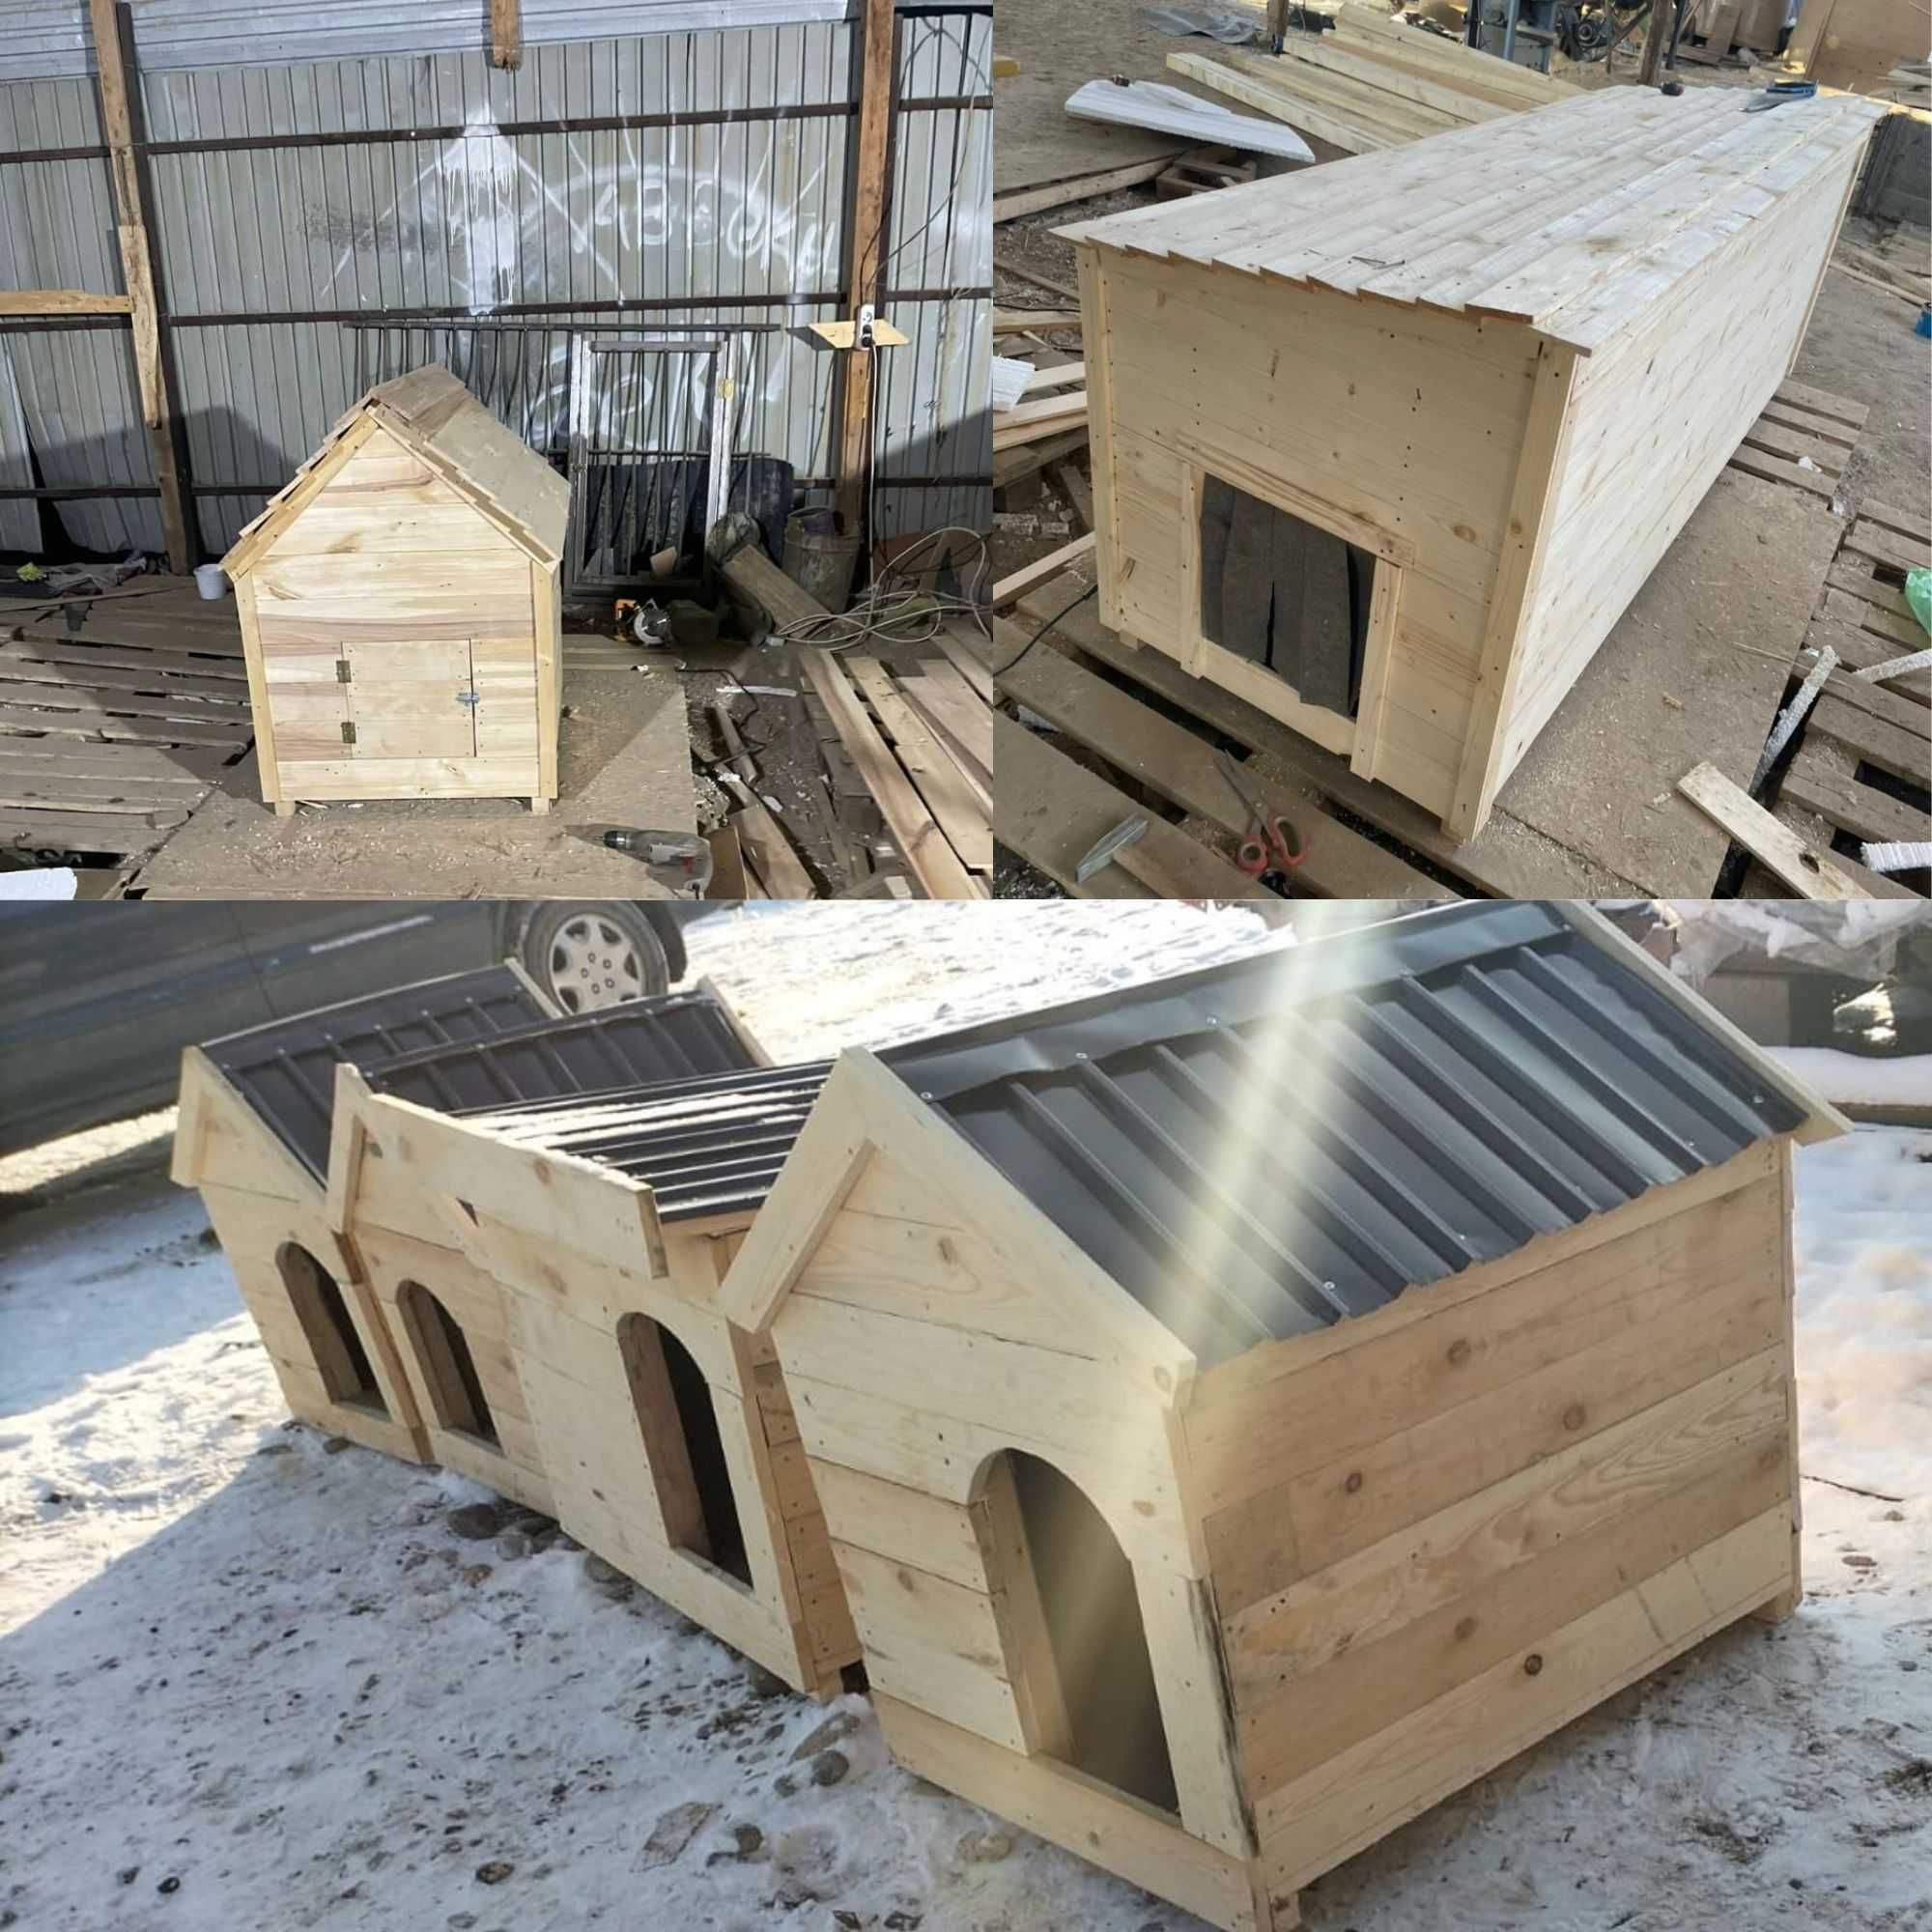 Вольер и будка клетки дом Собачьи домик для собак уличный утеплённый